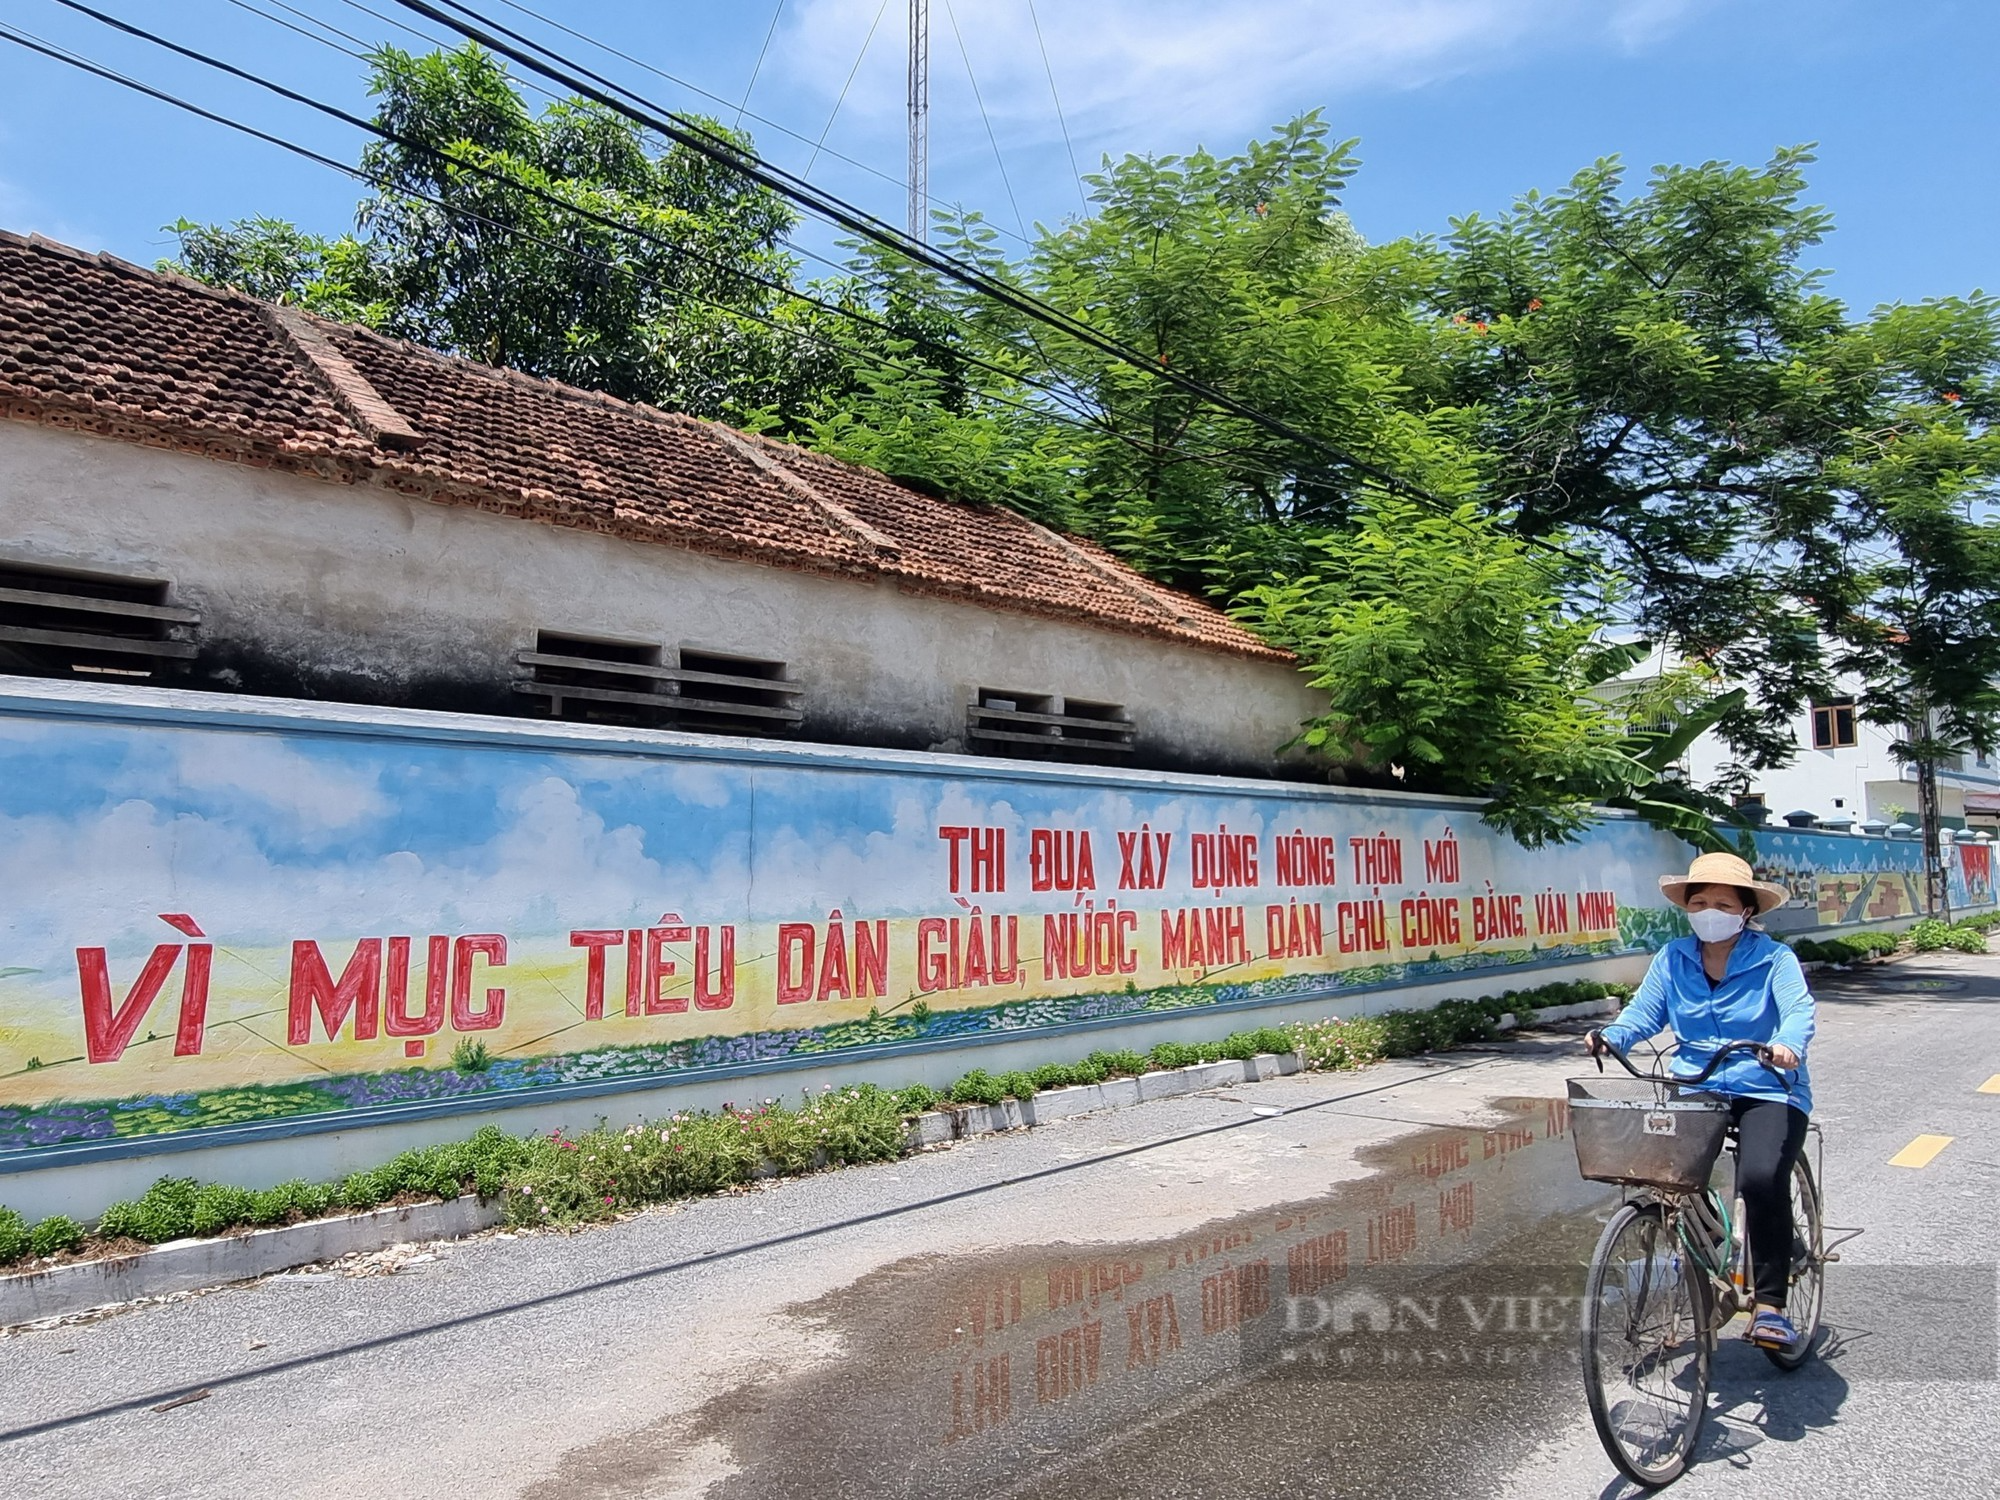 Một xã nông thôn mới nâng cao ở Ninh Bình, người dân thu nhập hơn 70 triệu đồng - Ảnh 5.